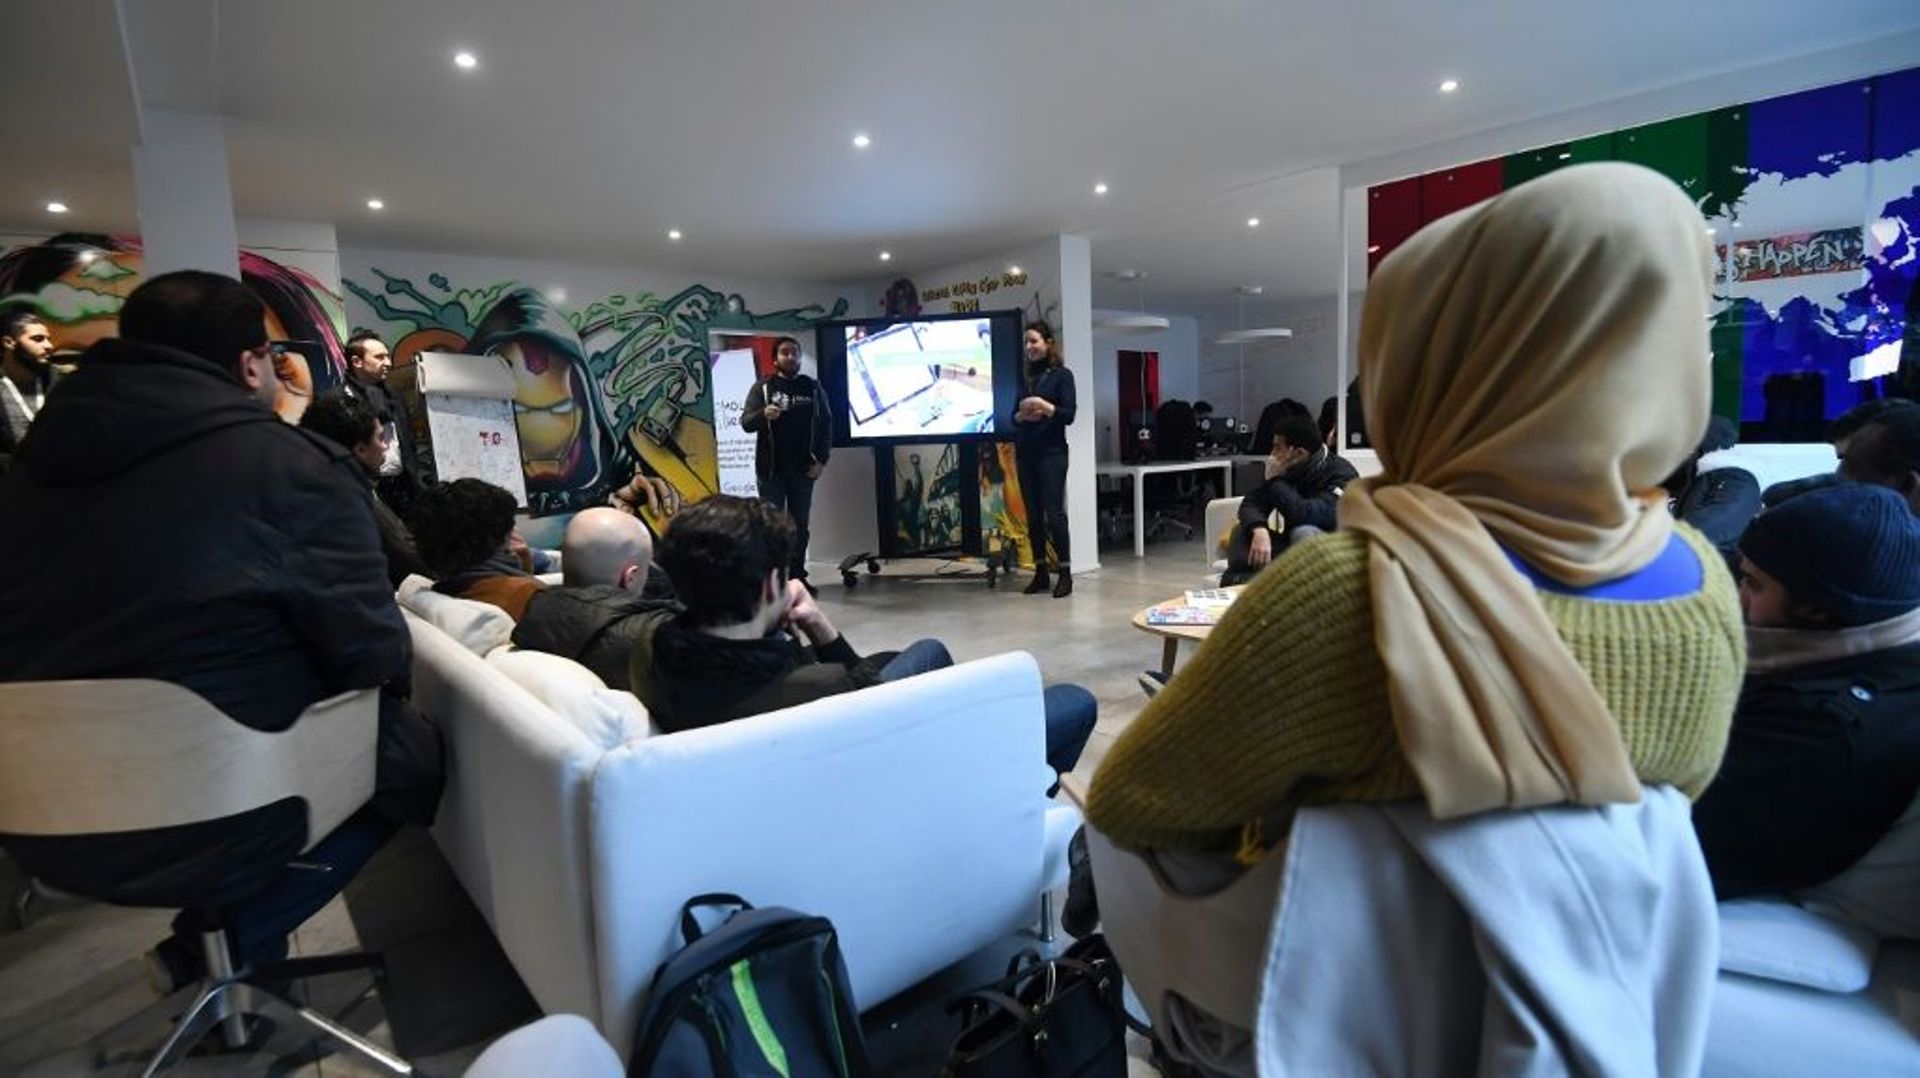 Les fondateurs de Molengeek Ibrahim Ouassari, un Belge du quartier de Molenbeek, et la française Julie Foulon accueillent des participants à une session de programmation au Centre MolenGeek à Molenbeek le 16 janvier 2018